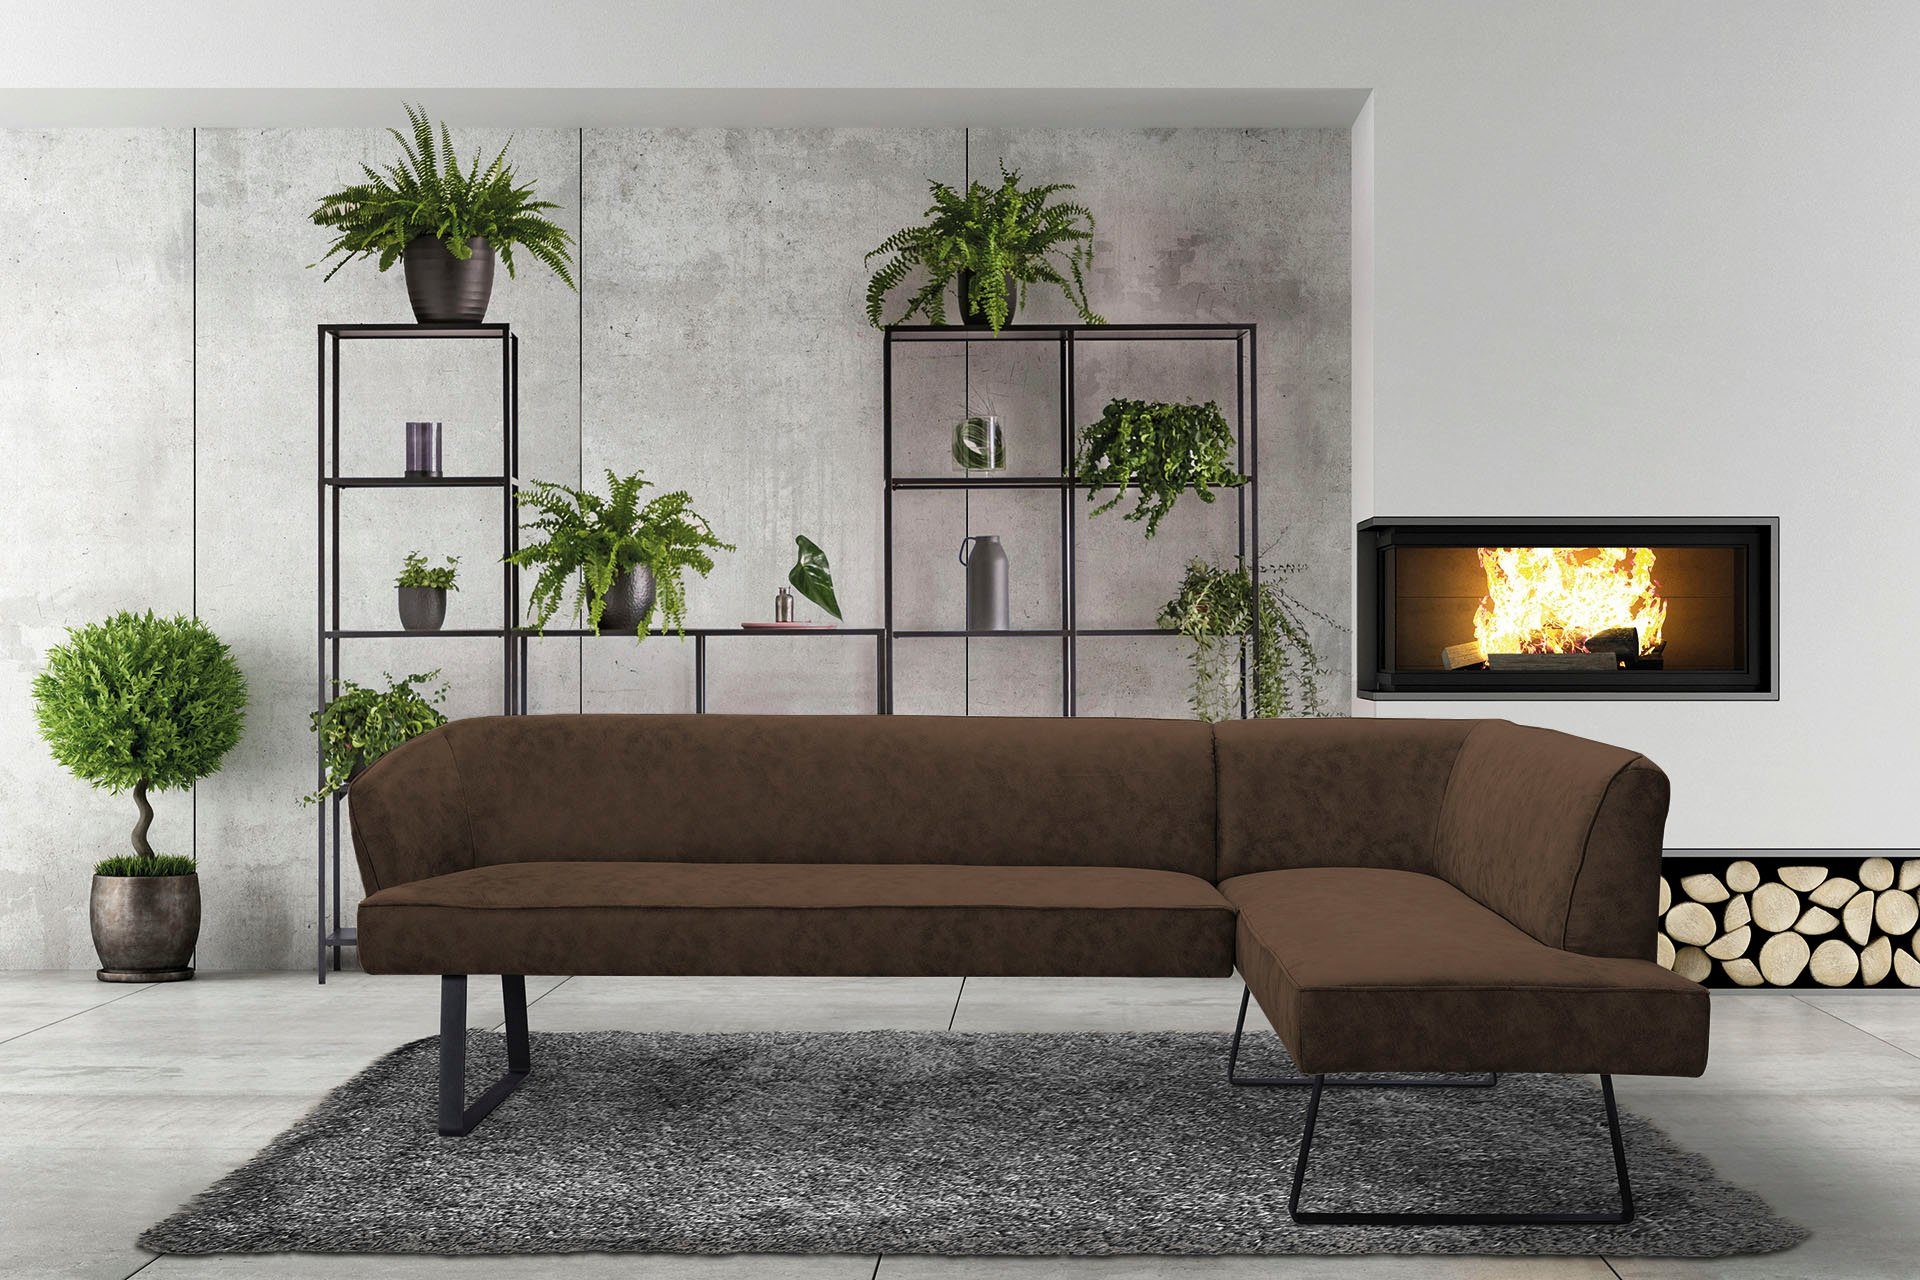 Bezug Metallfüßen, Qualitäten verschiedenen Keder - fashion sofa mit in exxpo Americano, und Eckbank